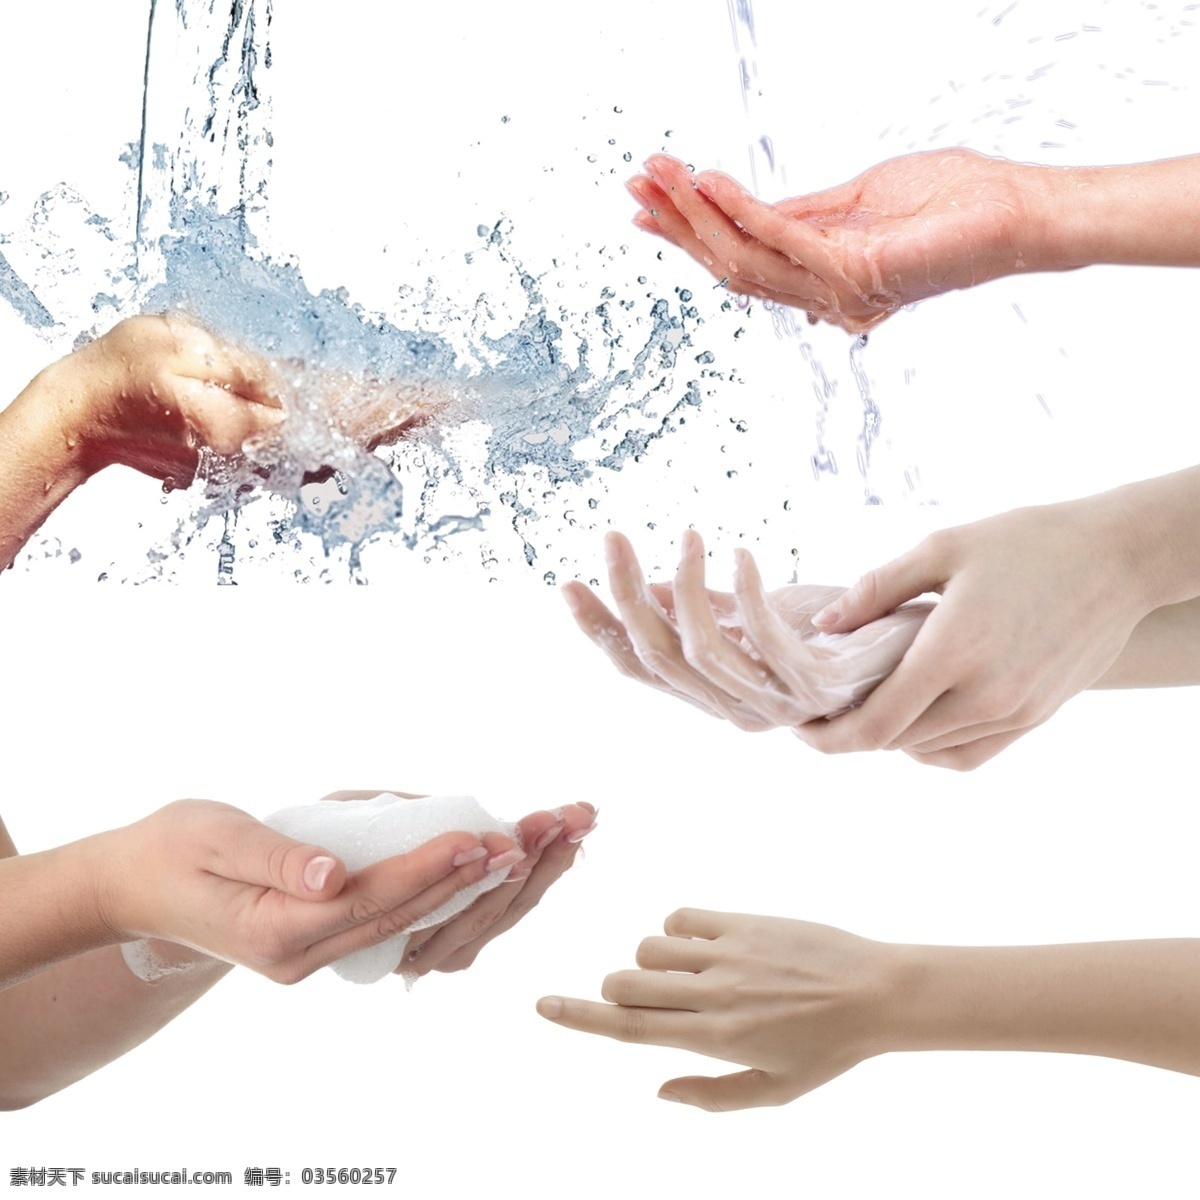 手图片 美手 洗手 手指 模特手 泡沫 小元素 分层